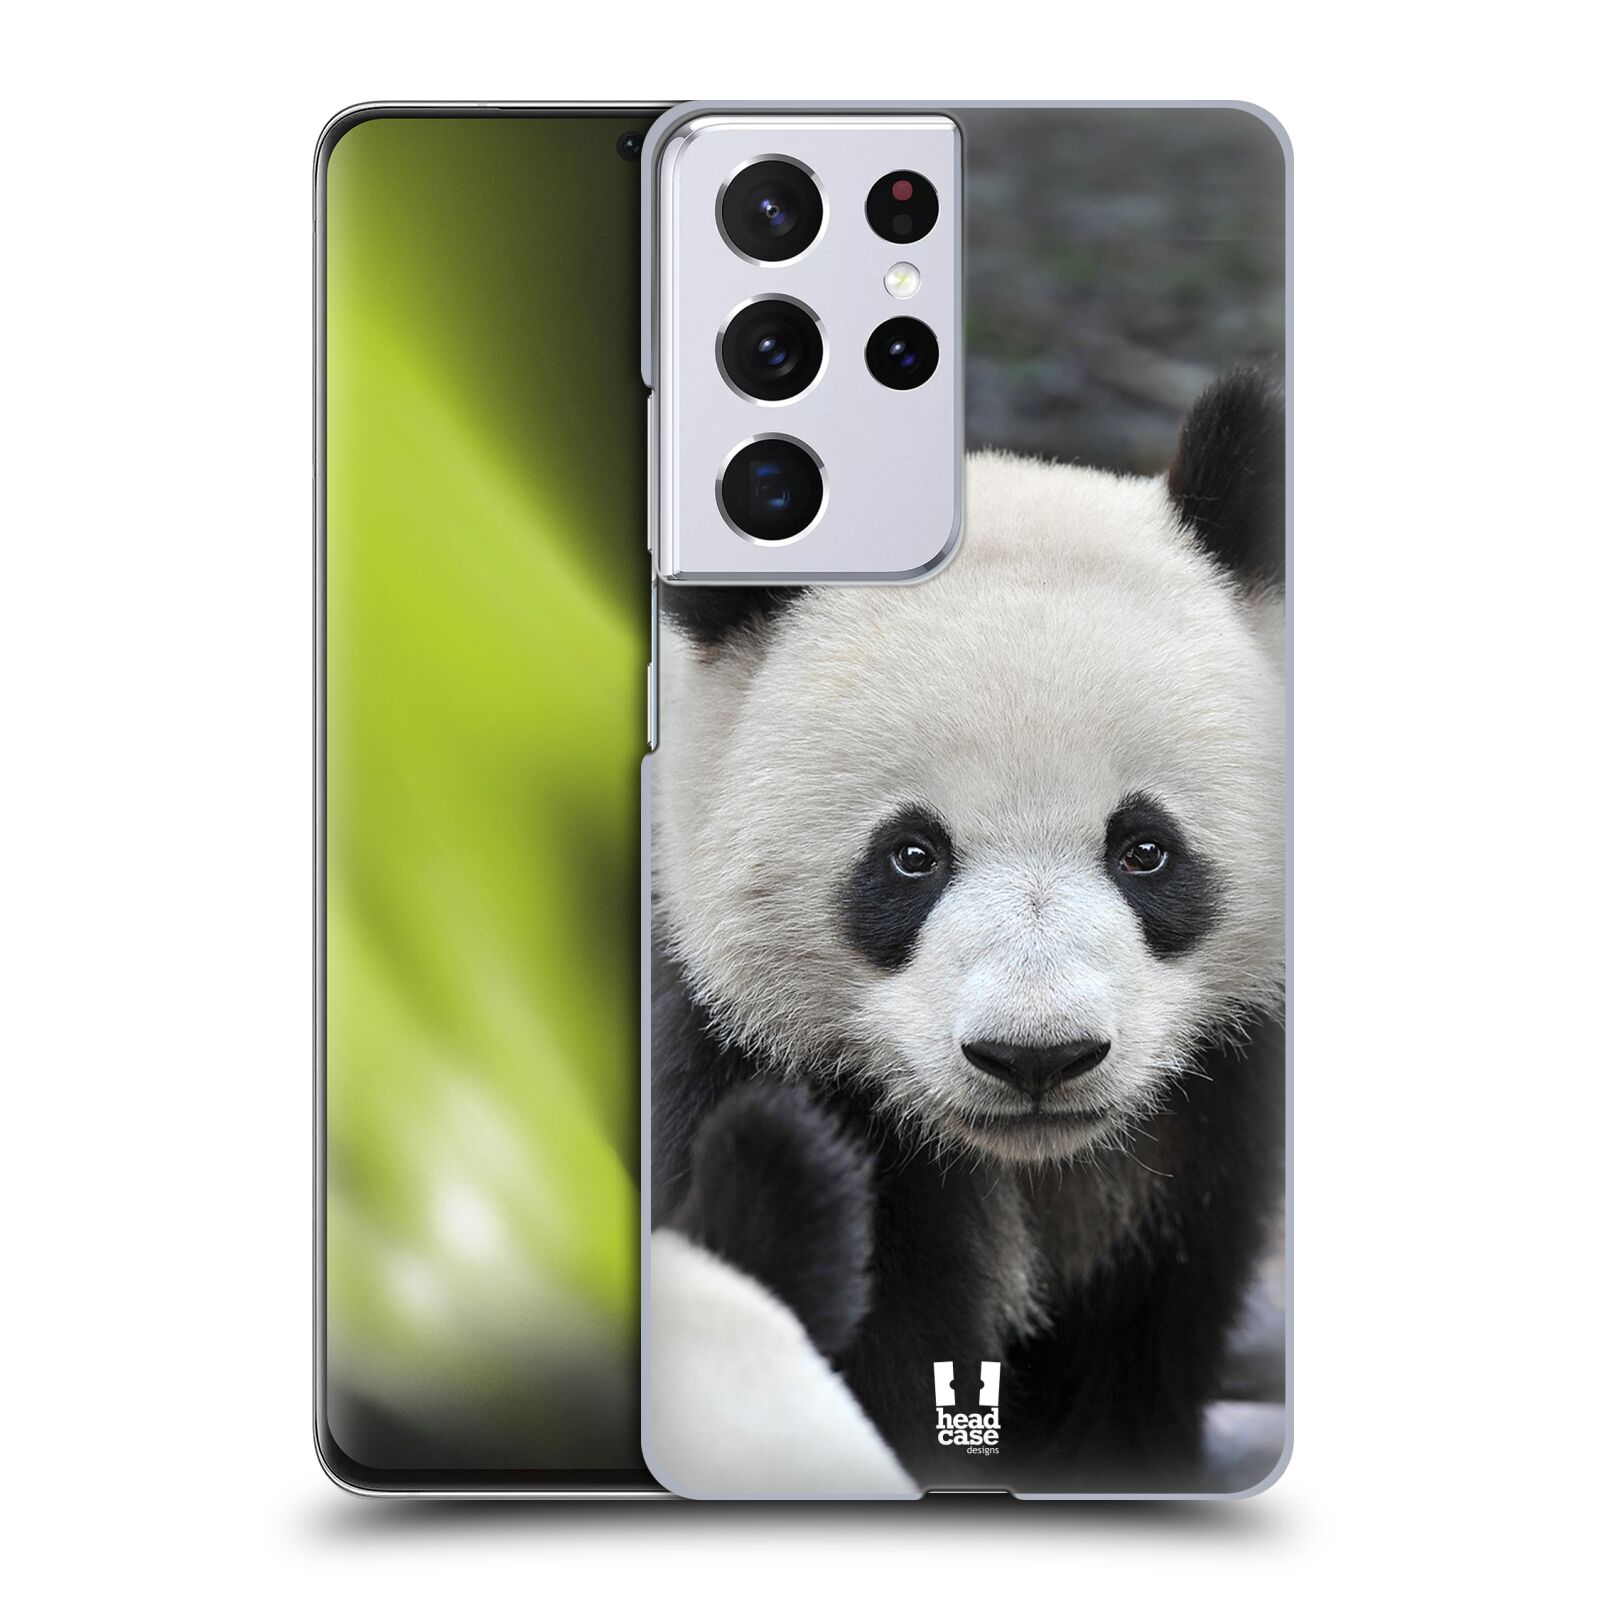 Zadní obal pro mobil Samsung Galaxy S21 ULTRA 5G - HEAD CASE - Svět zvířat medvěd panda